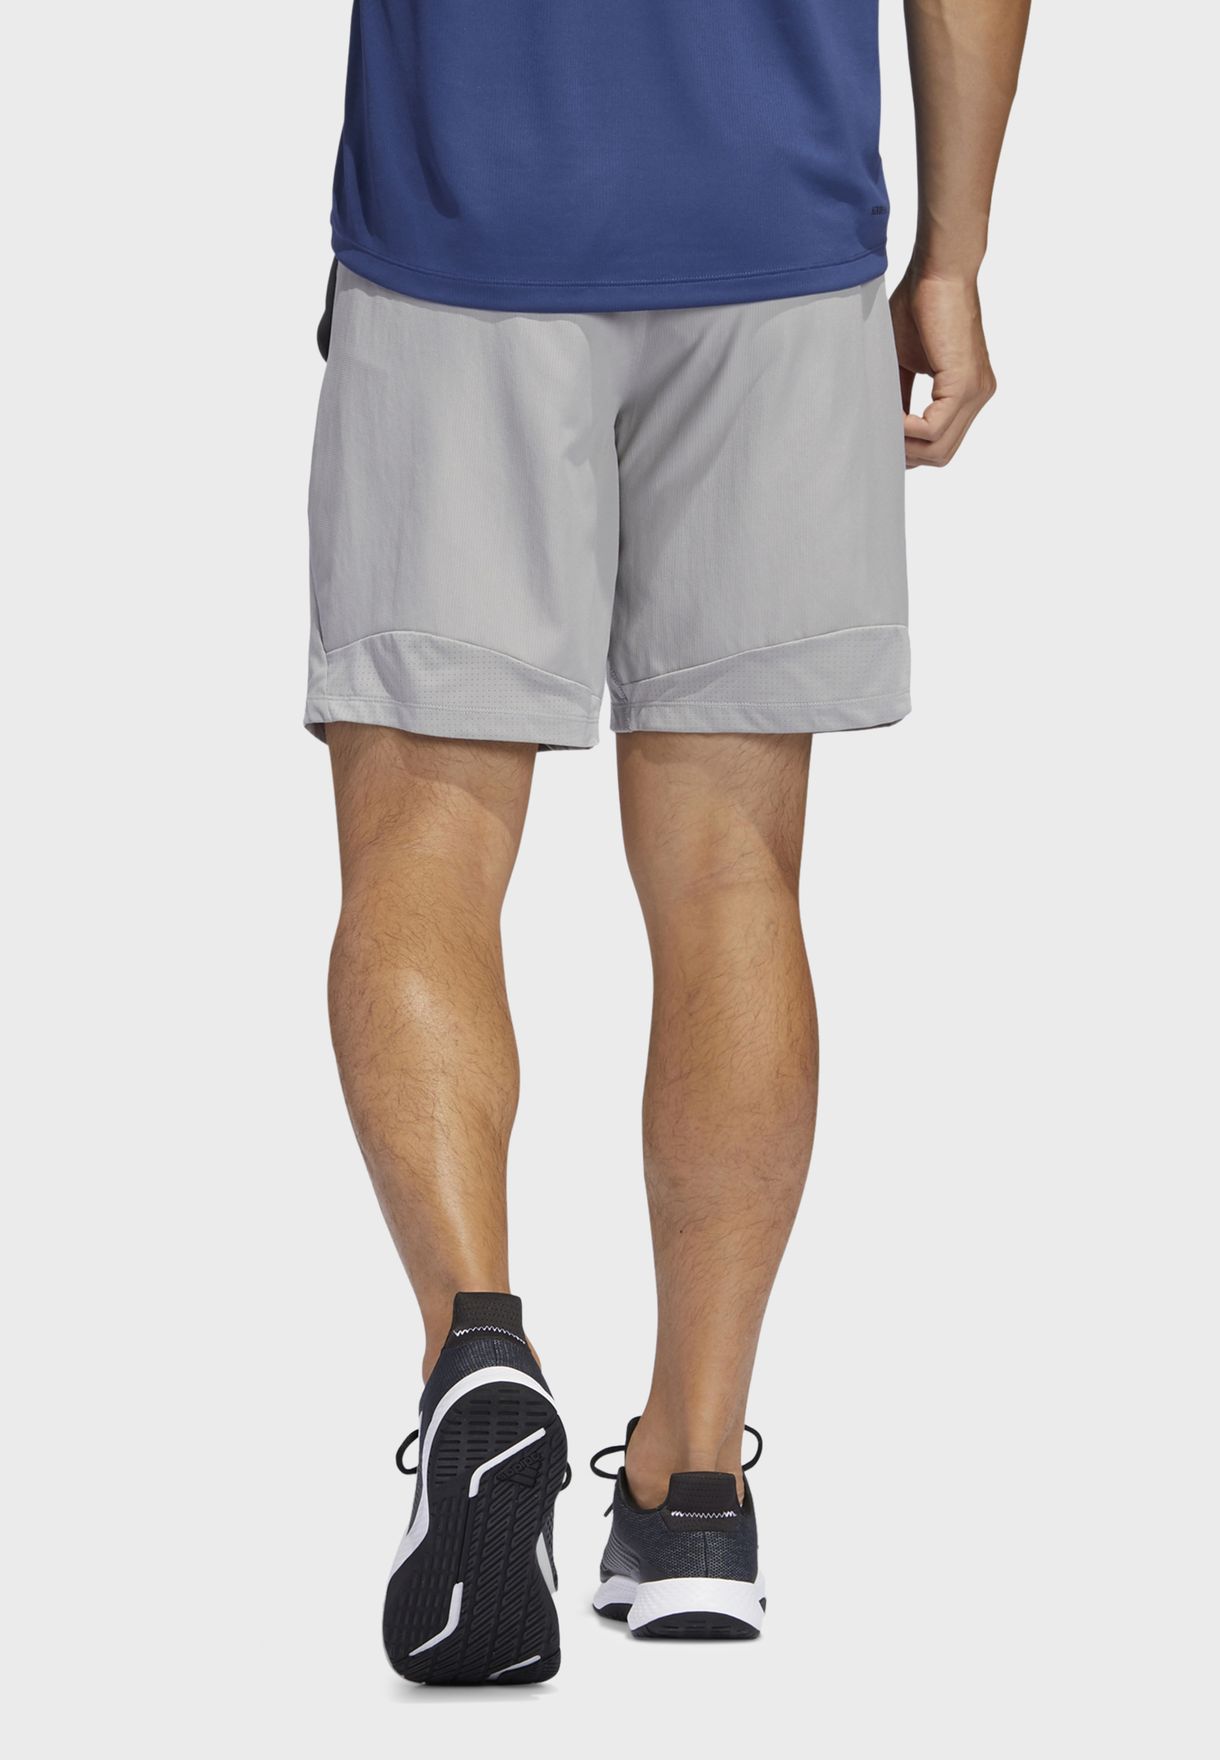 adidas 4krft sport woven shorts